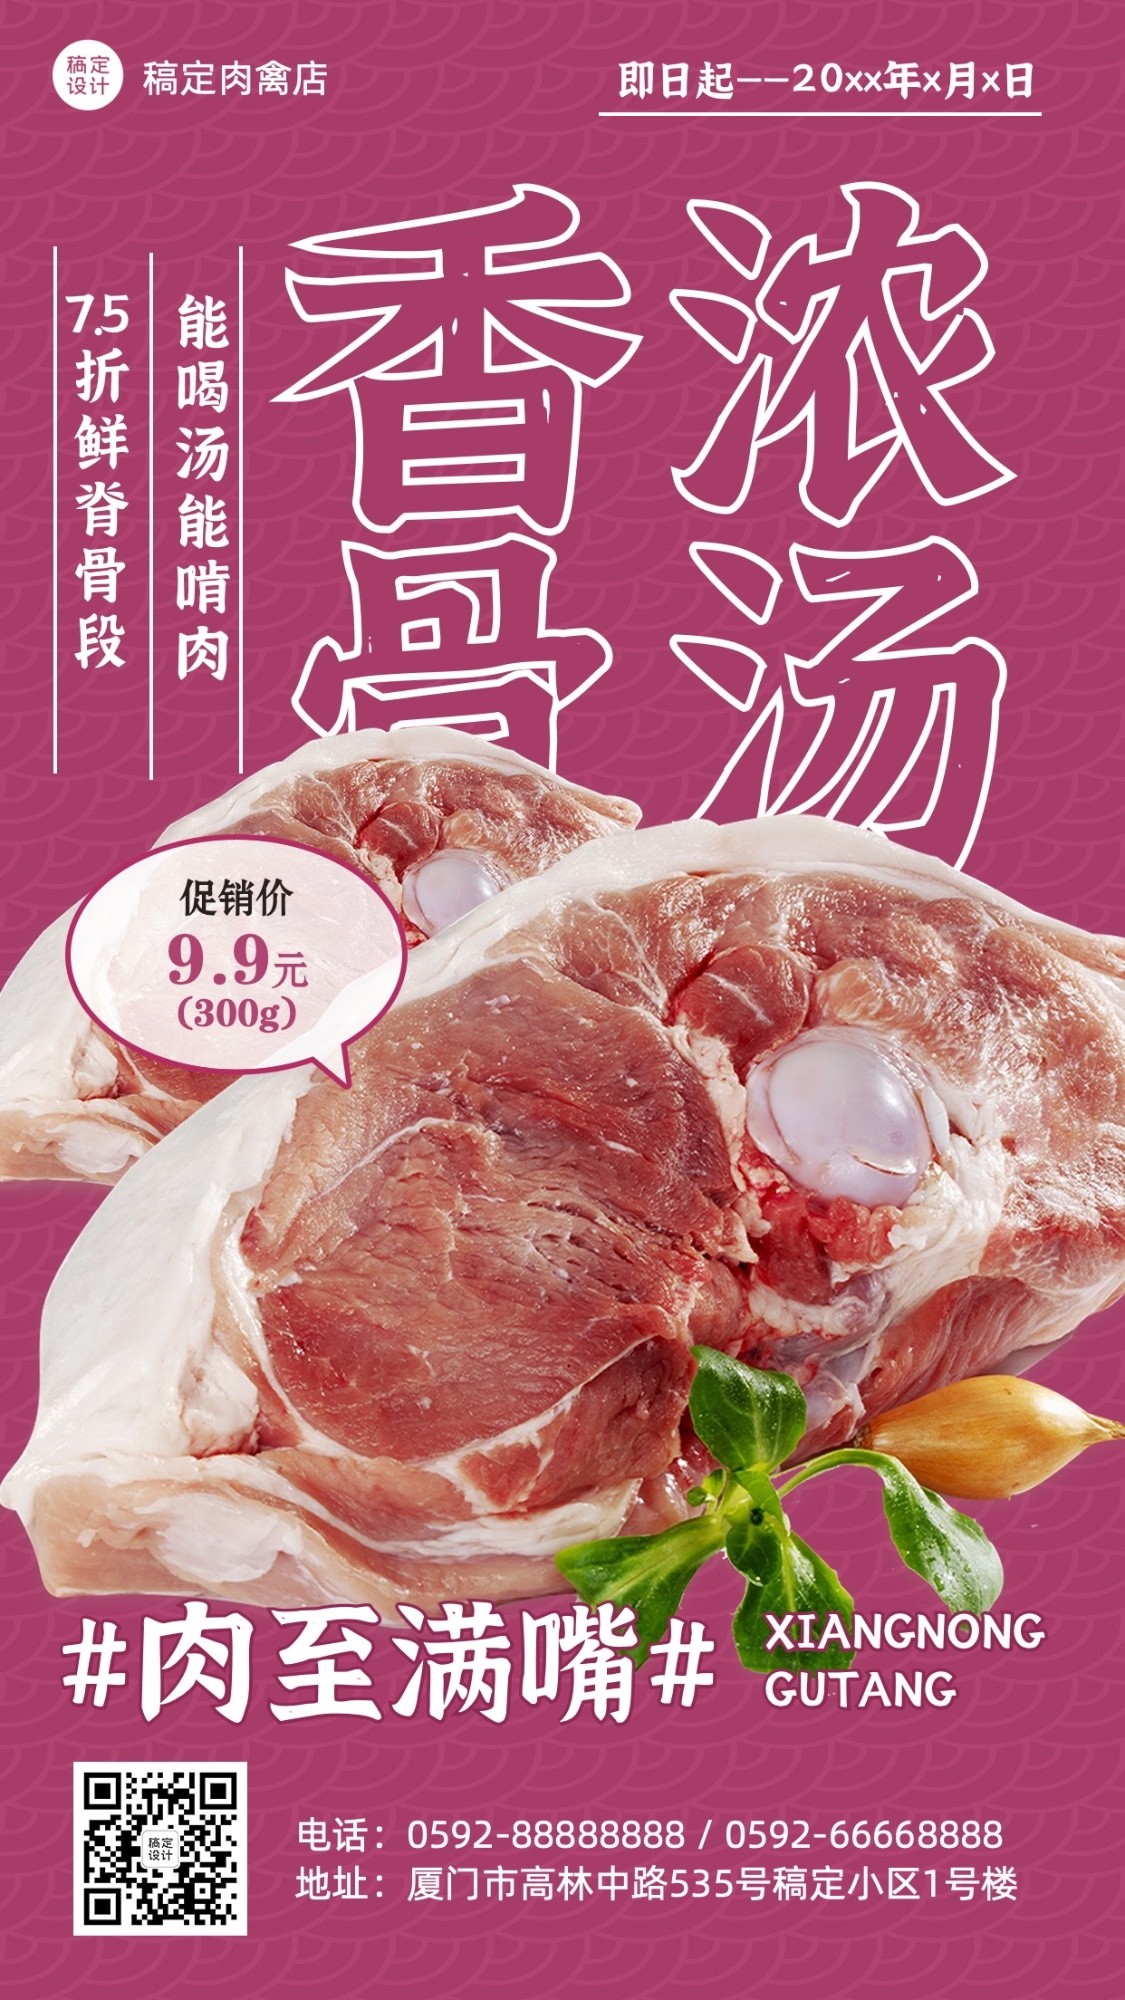 餐饮食品生鲜肉蛋禽竖版海报套系预览效果